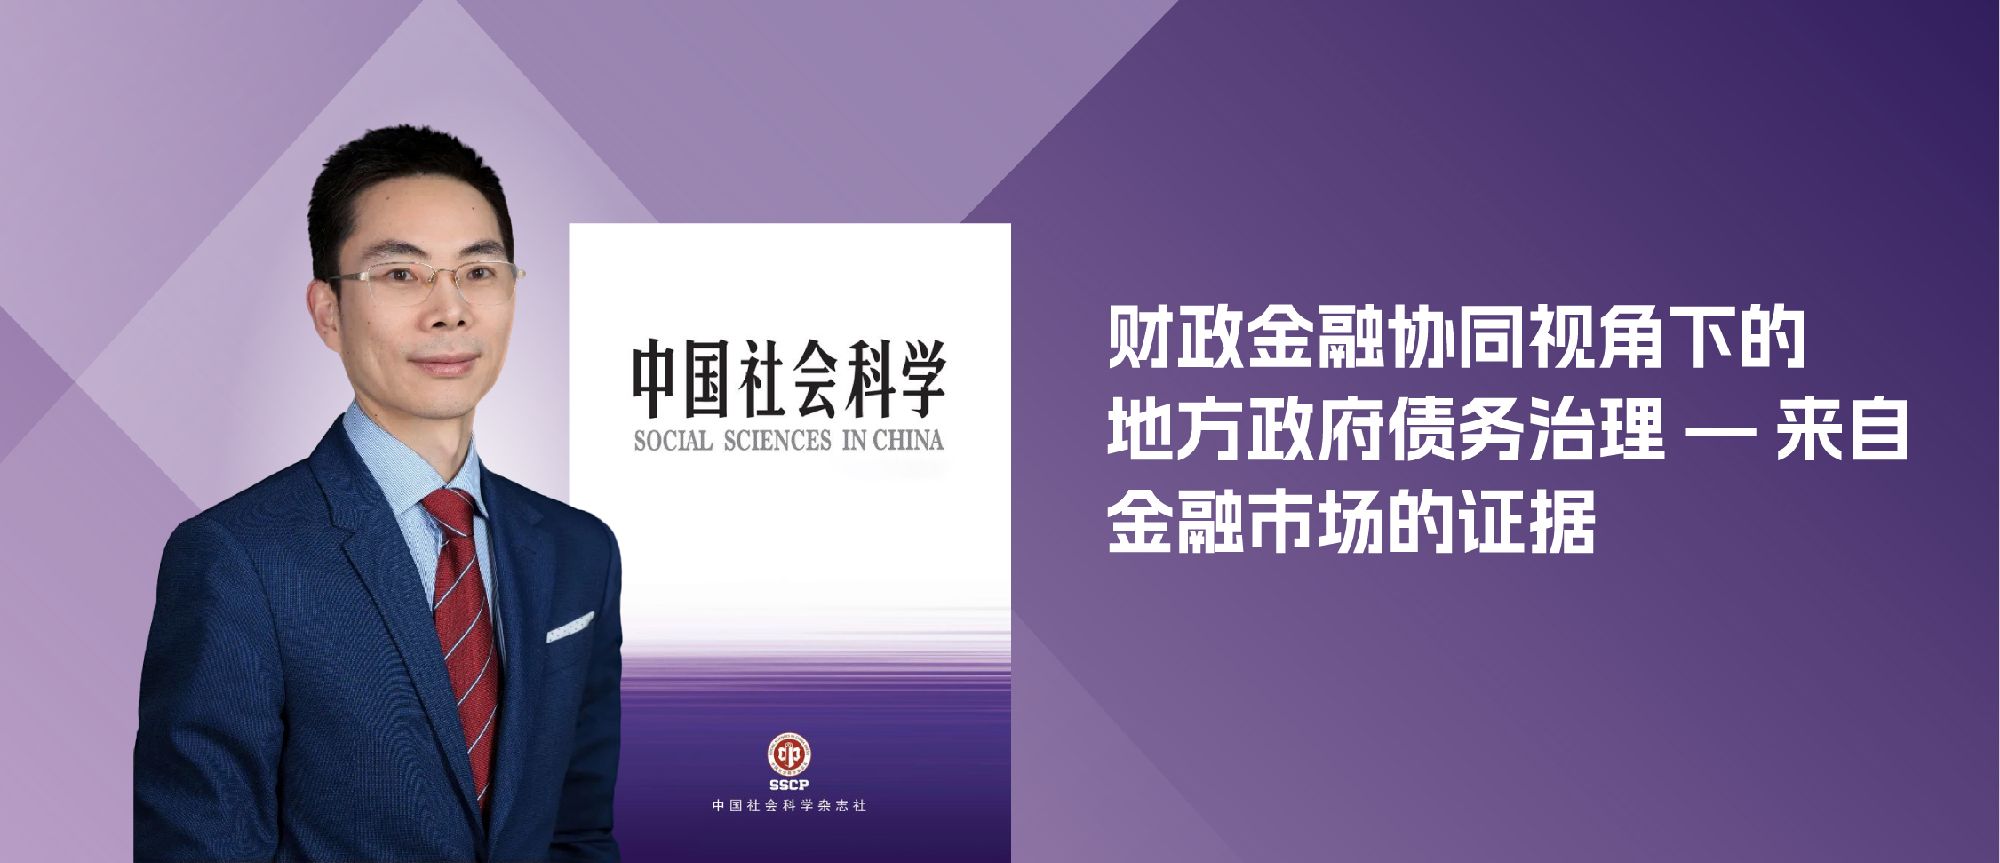 吴文锋教授在《中国社会科学》发表学术论文